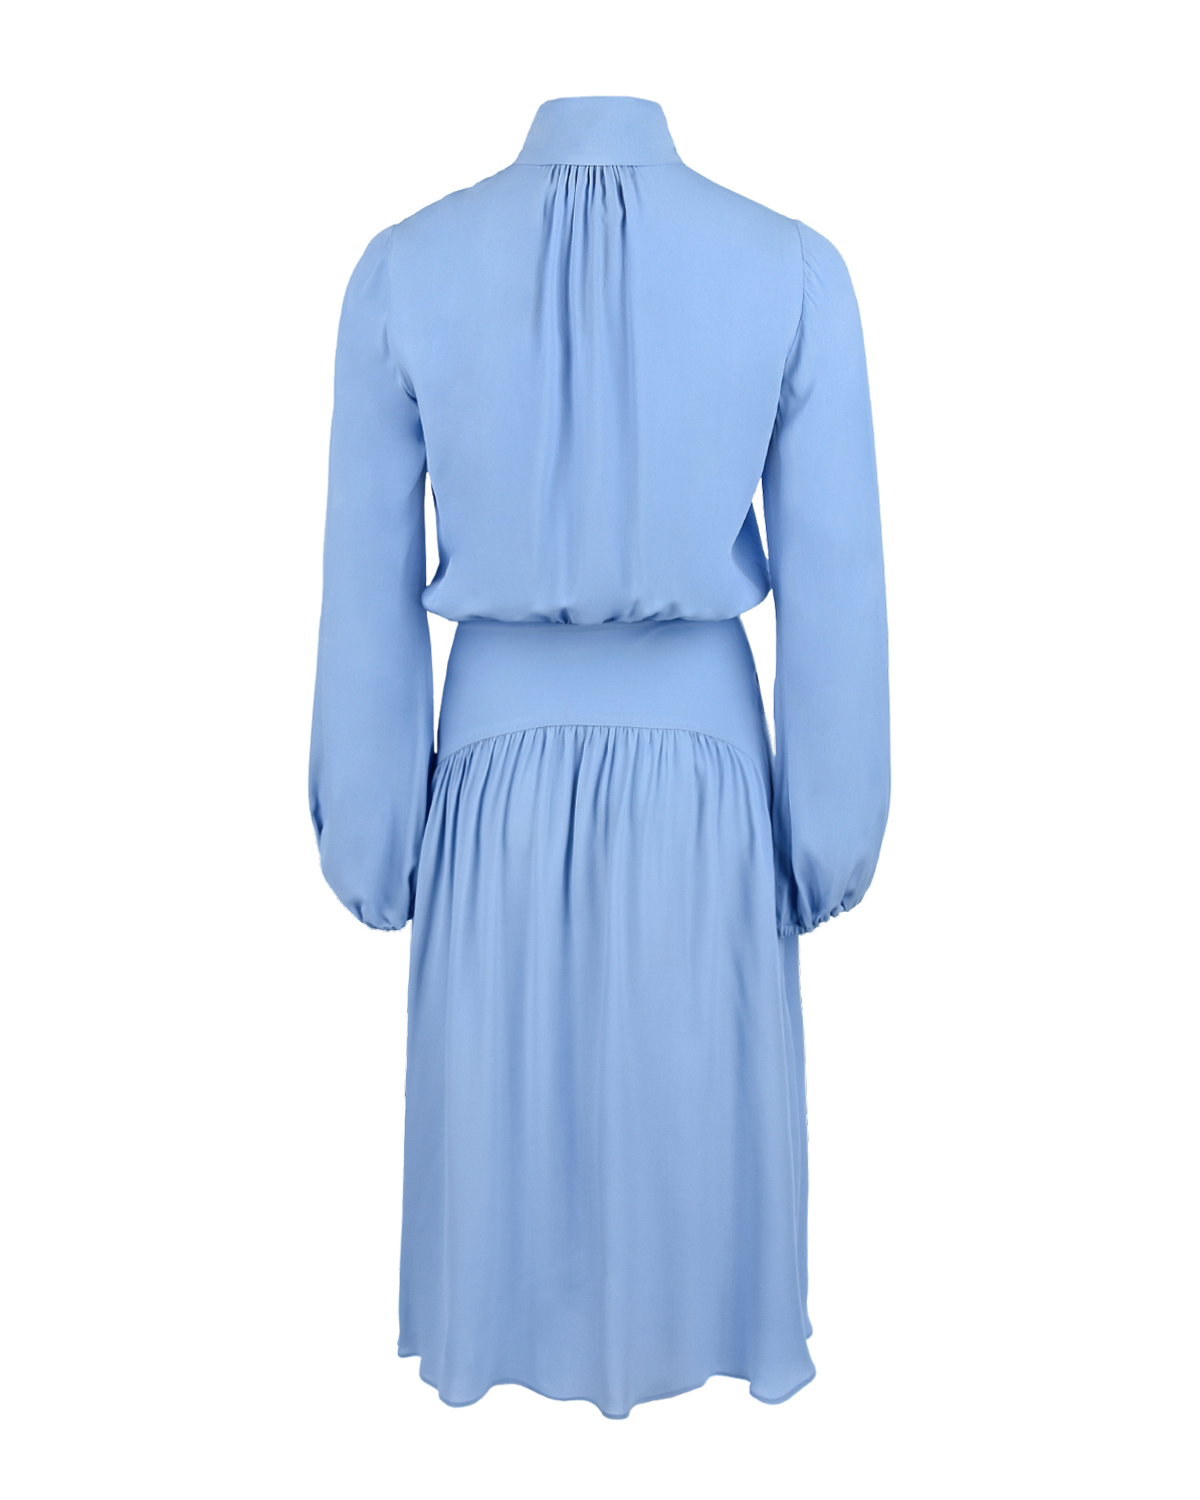 Голубое платье с бантом No. 21, размер 40, цвет голубой - фото 2